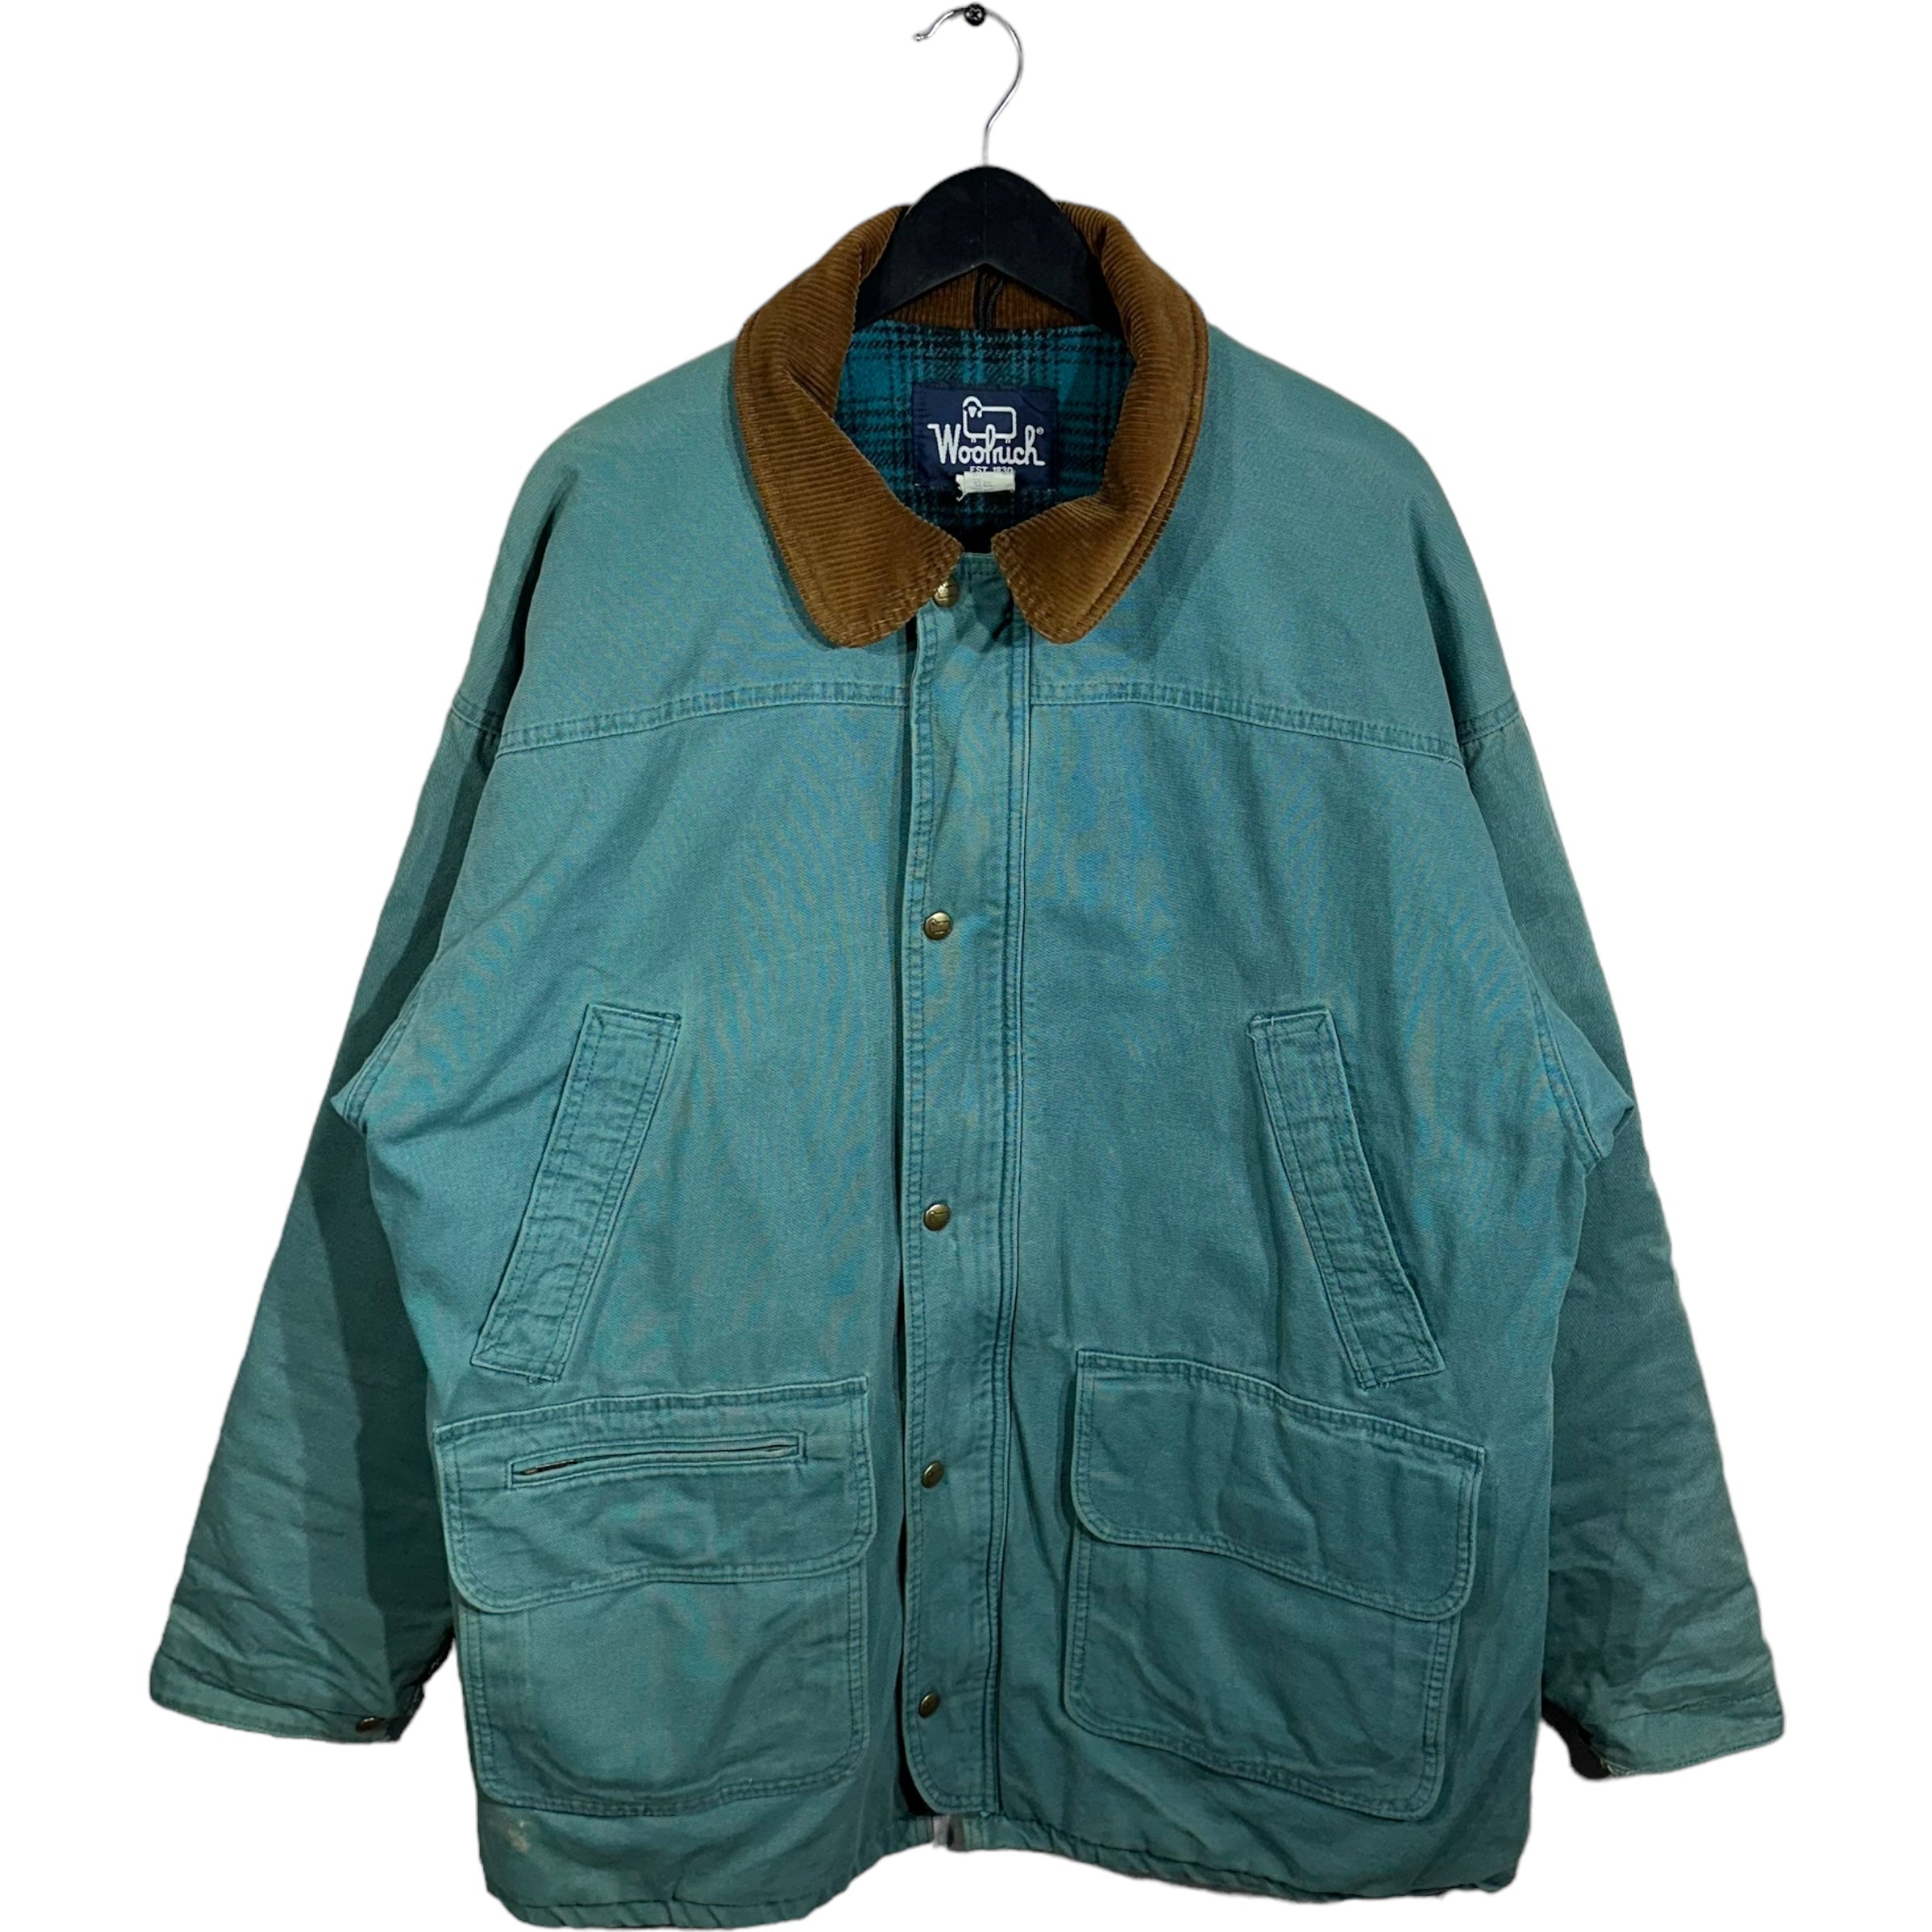 Vinatge Woolrich Flannel Lined Jacket